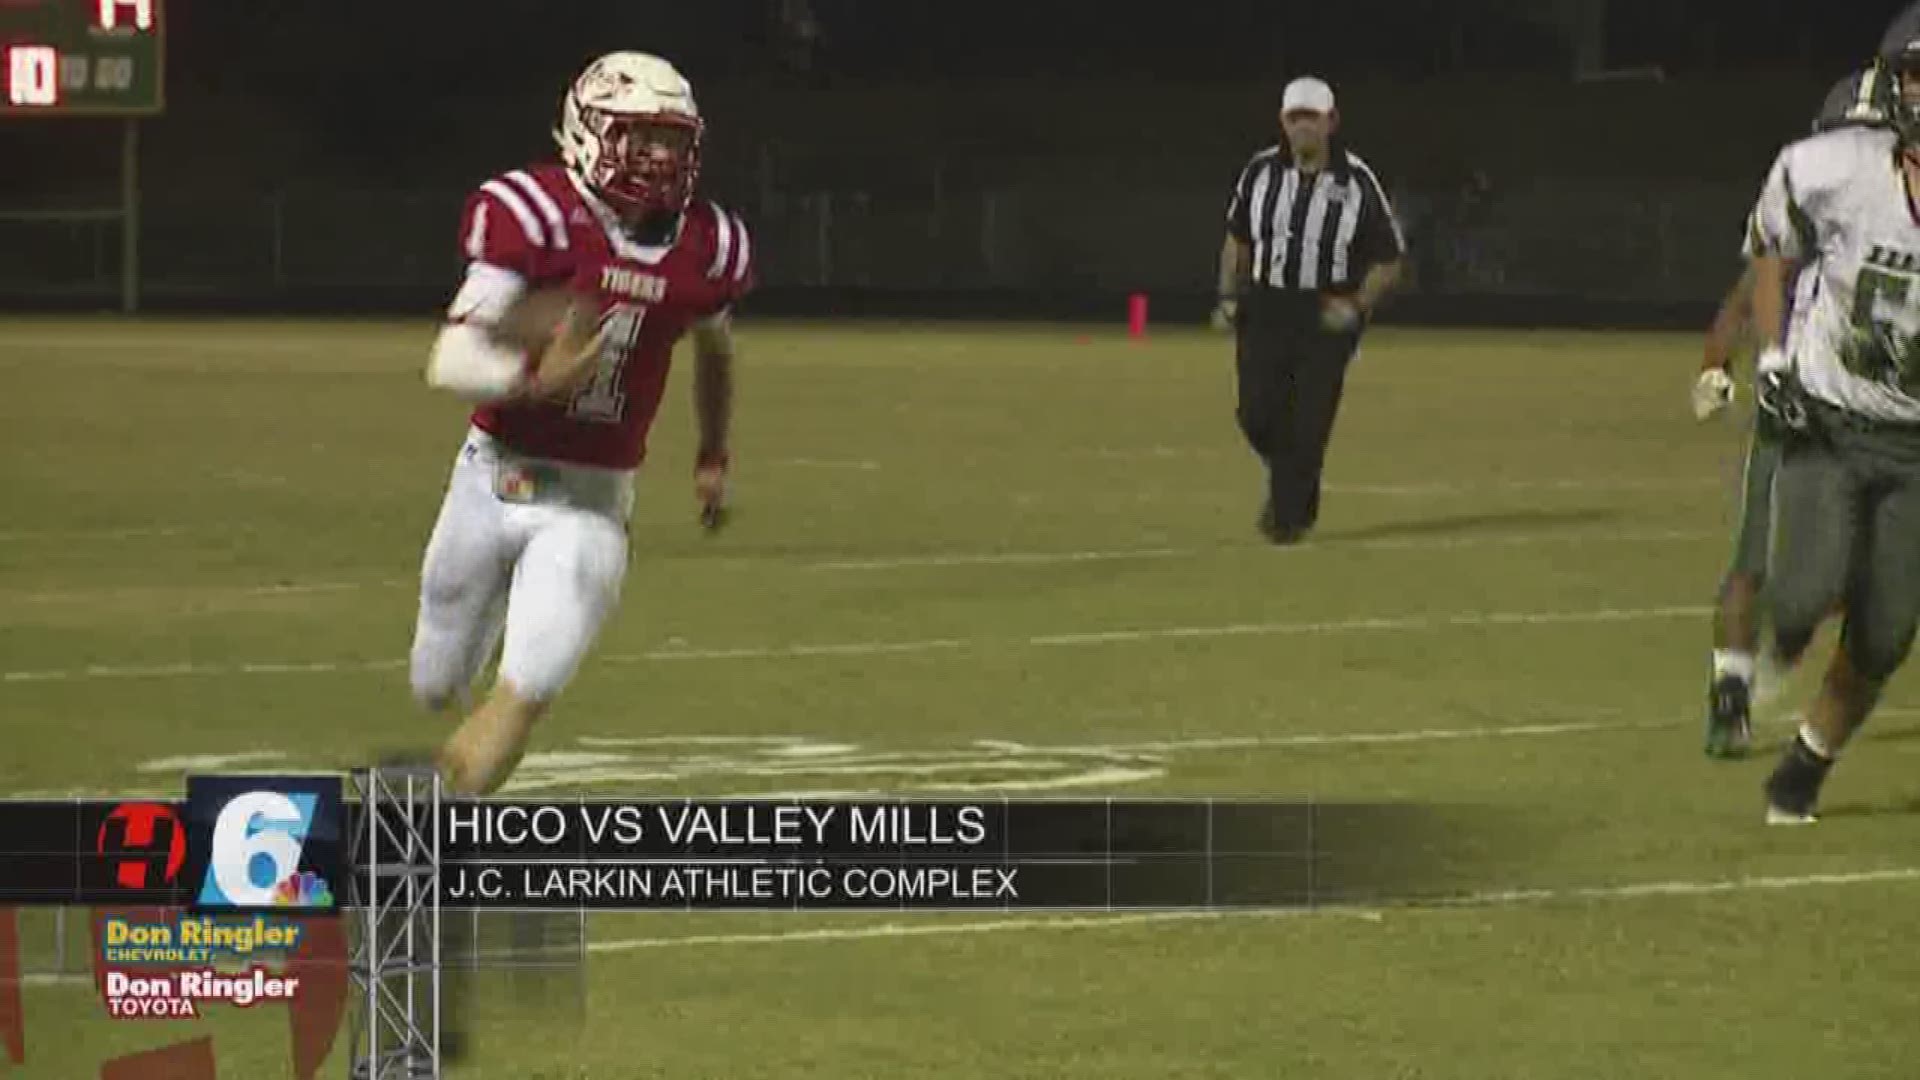 Hico vs Valley Mills highlights